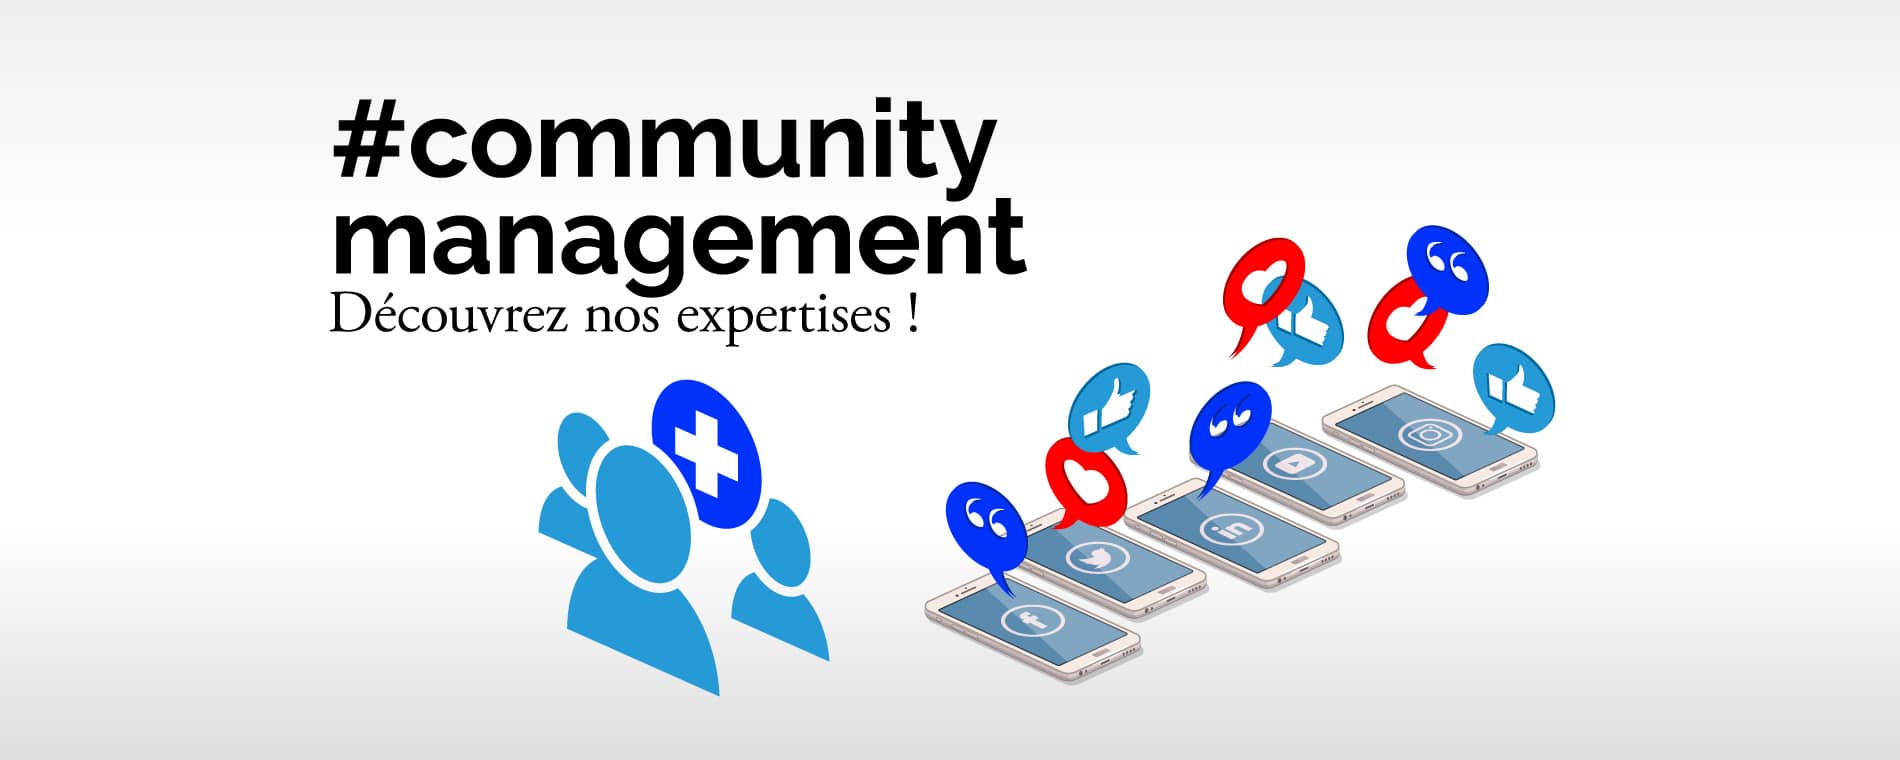 Community management - Découvrez nos expertisesCommunity management – Découvrez nos expertises